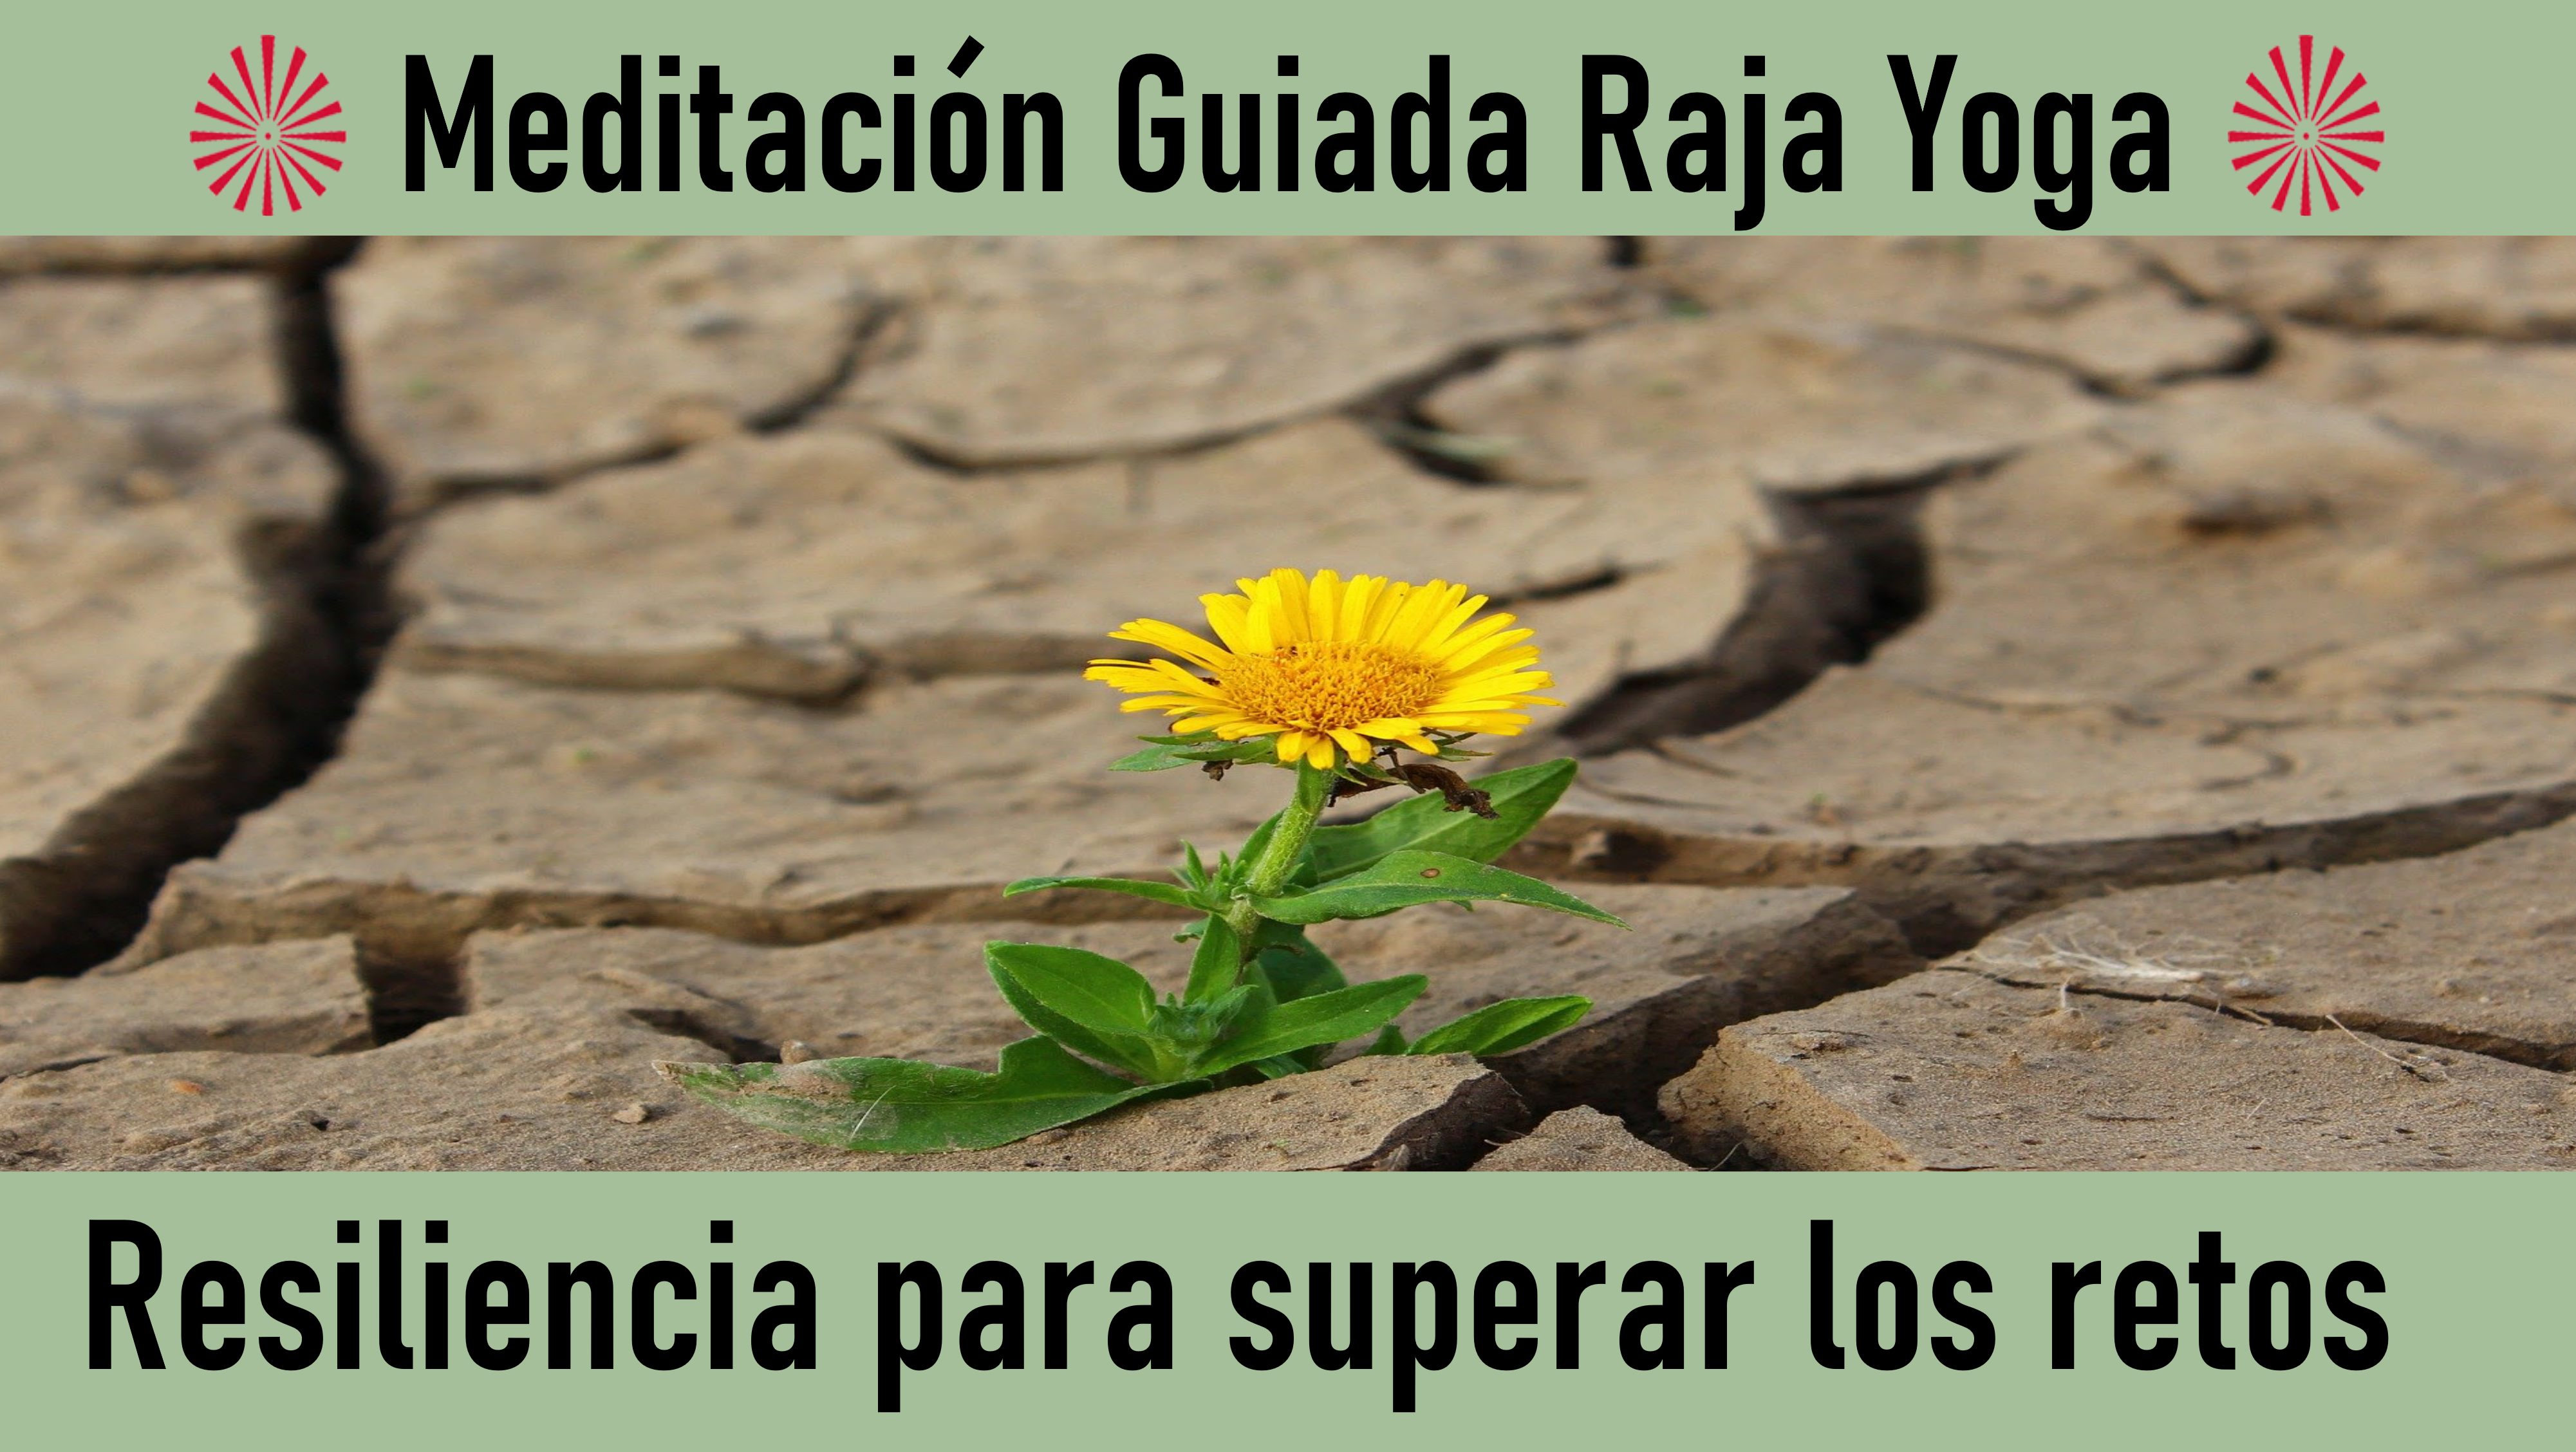 Meditación Raja Yoga: Resiliencia para superar los retos (4 Junio 2020) On-line desde Valencia